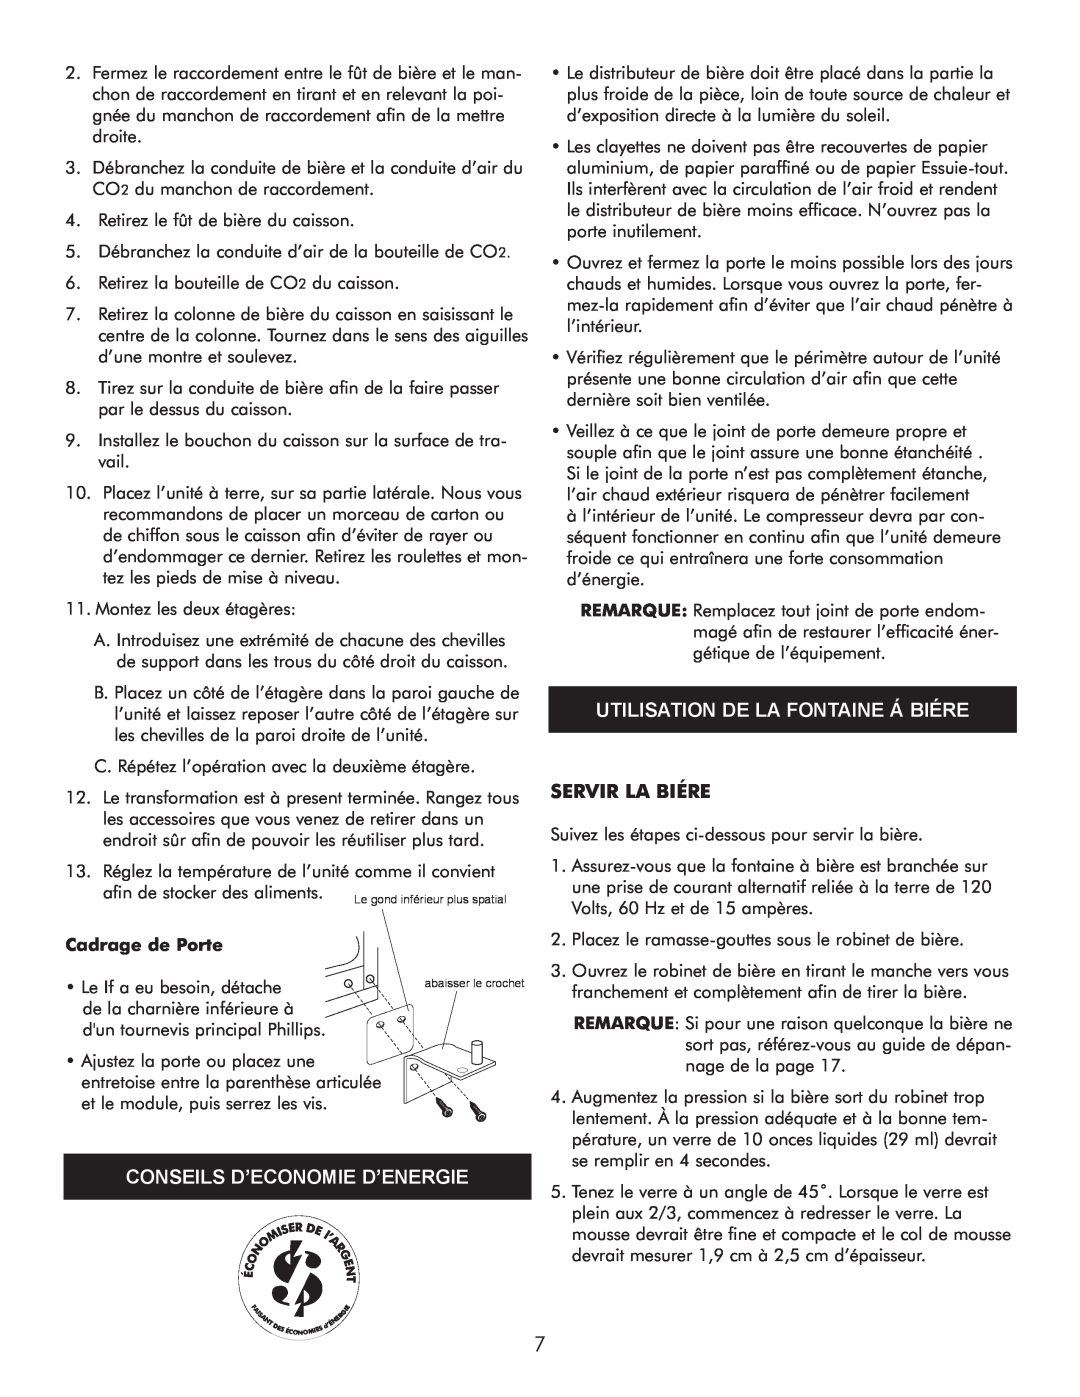 Sears 183.91579 manual Utilisation De La Fontaine Á Biére, Conseils D’Economie D’Energie, Servir La Biére, Cadrage de Porte 